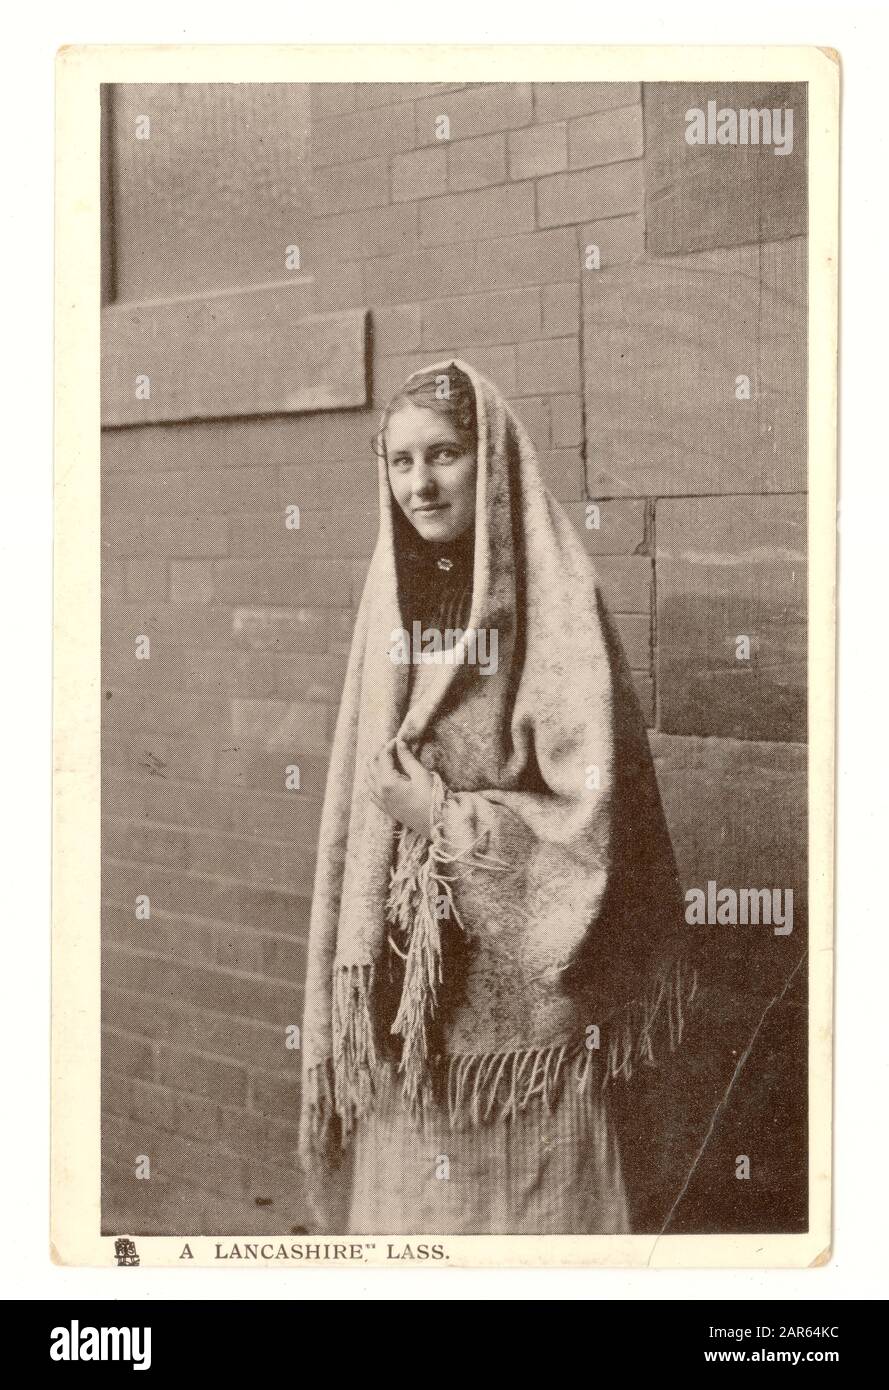 Carte postale originale du début des années 1900 intitulée « a Lancashire lass ».La jeune femme porte actuellement un châle typique des travailleuses de l'usine.Royaume-Uni, vers 1906 Banque D'Images